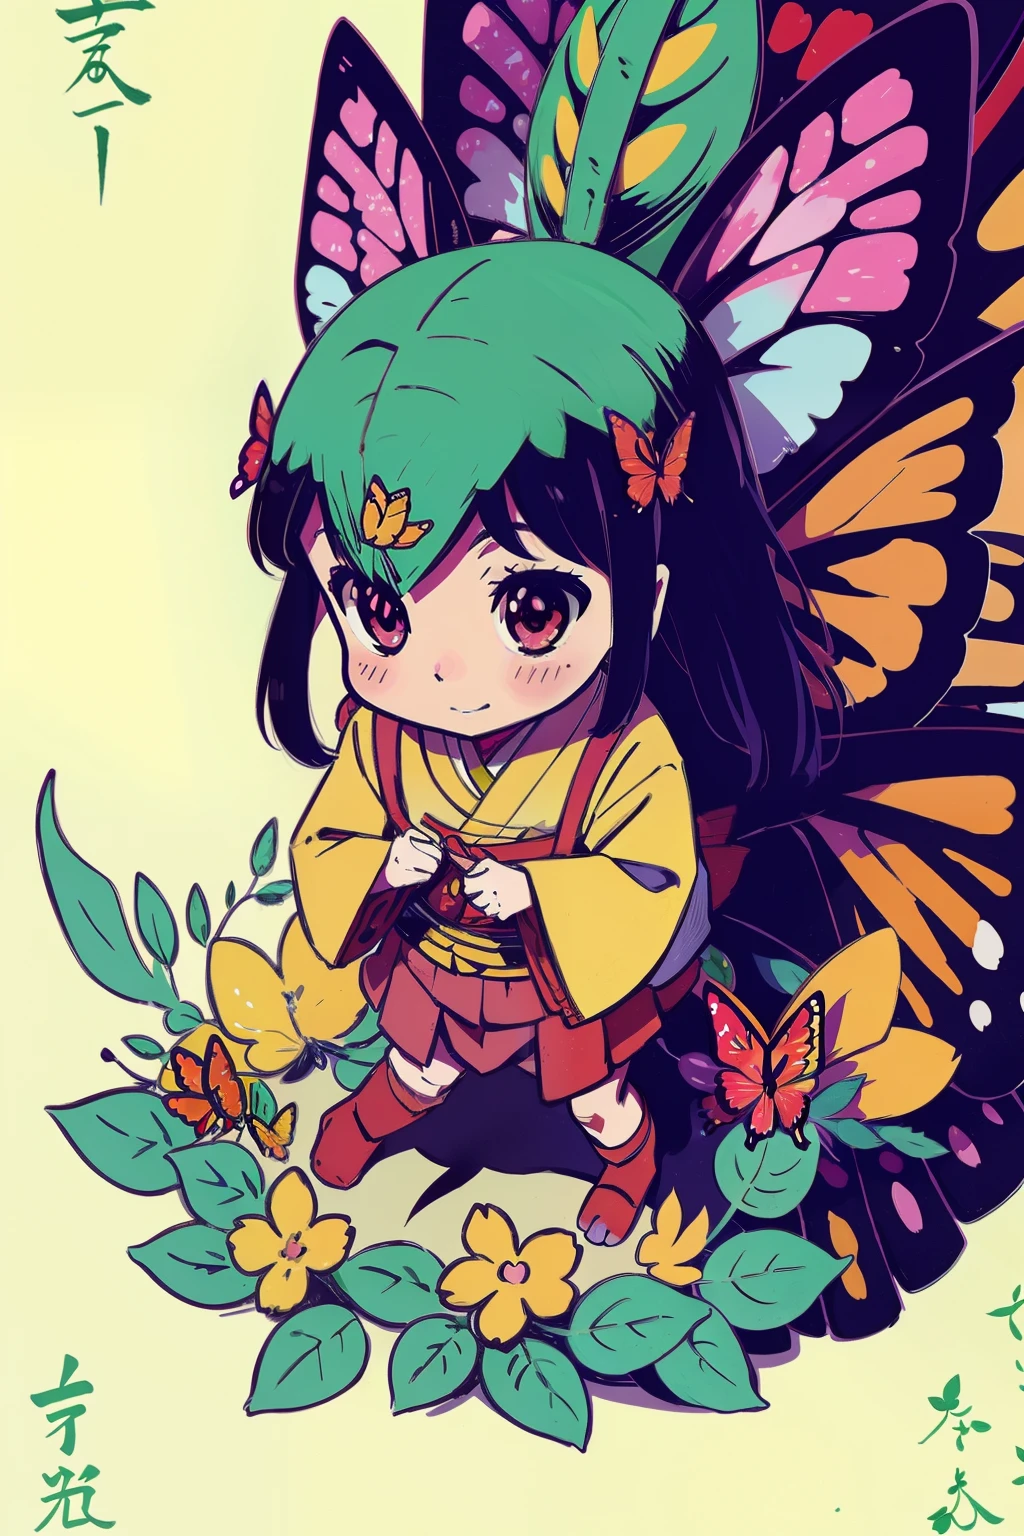  Reiko , Glück , Inspiration aus Anime: Eine 5,000 Jahre alter pflanzenfressender Drache ist ungerechterweise böse, Wald , Blume , Schmetterling in Farbe